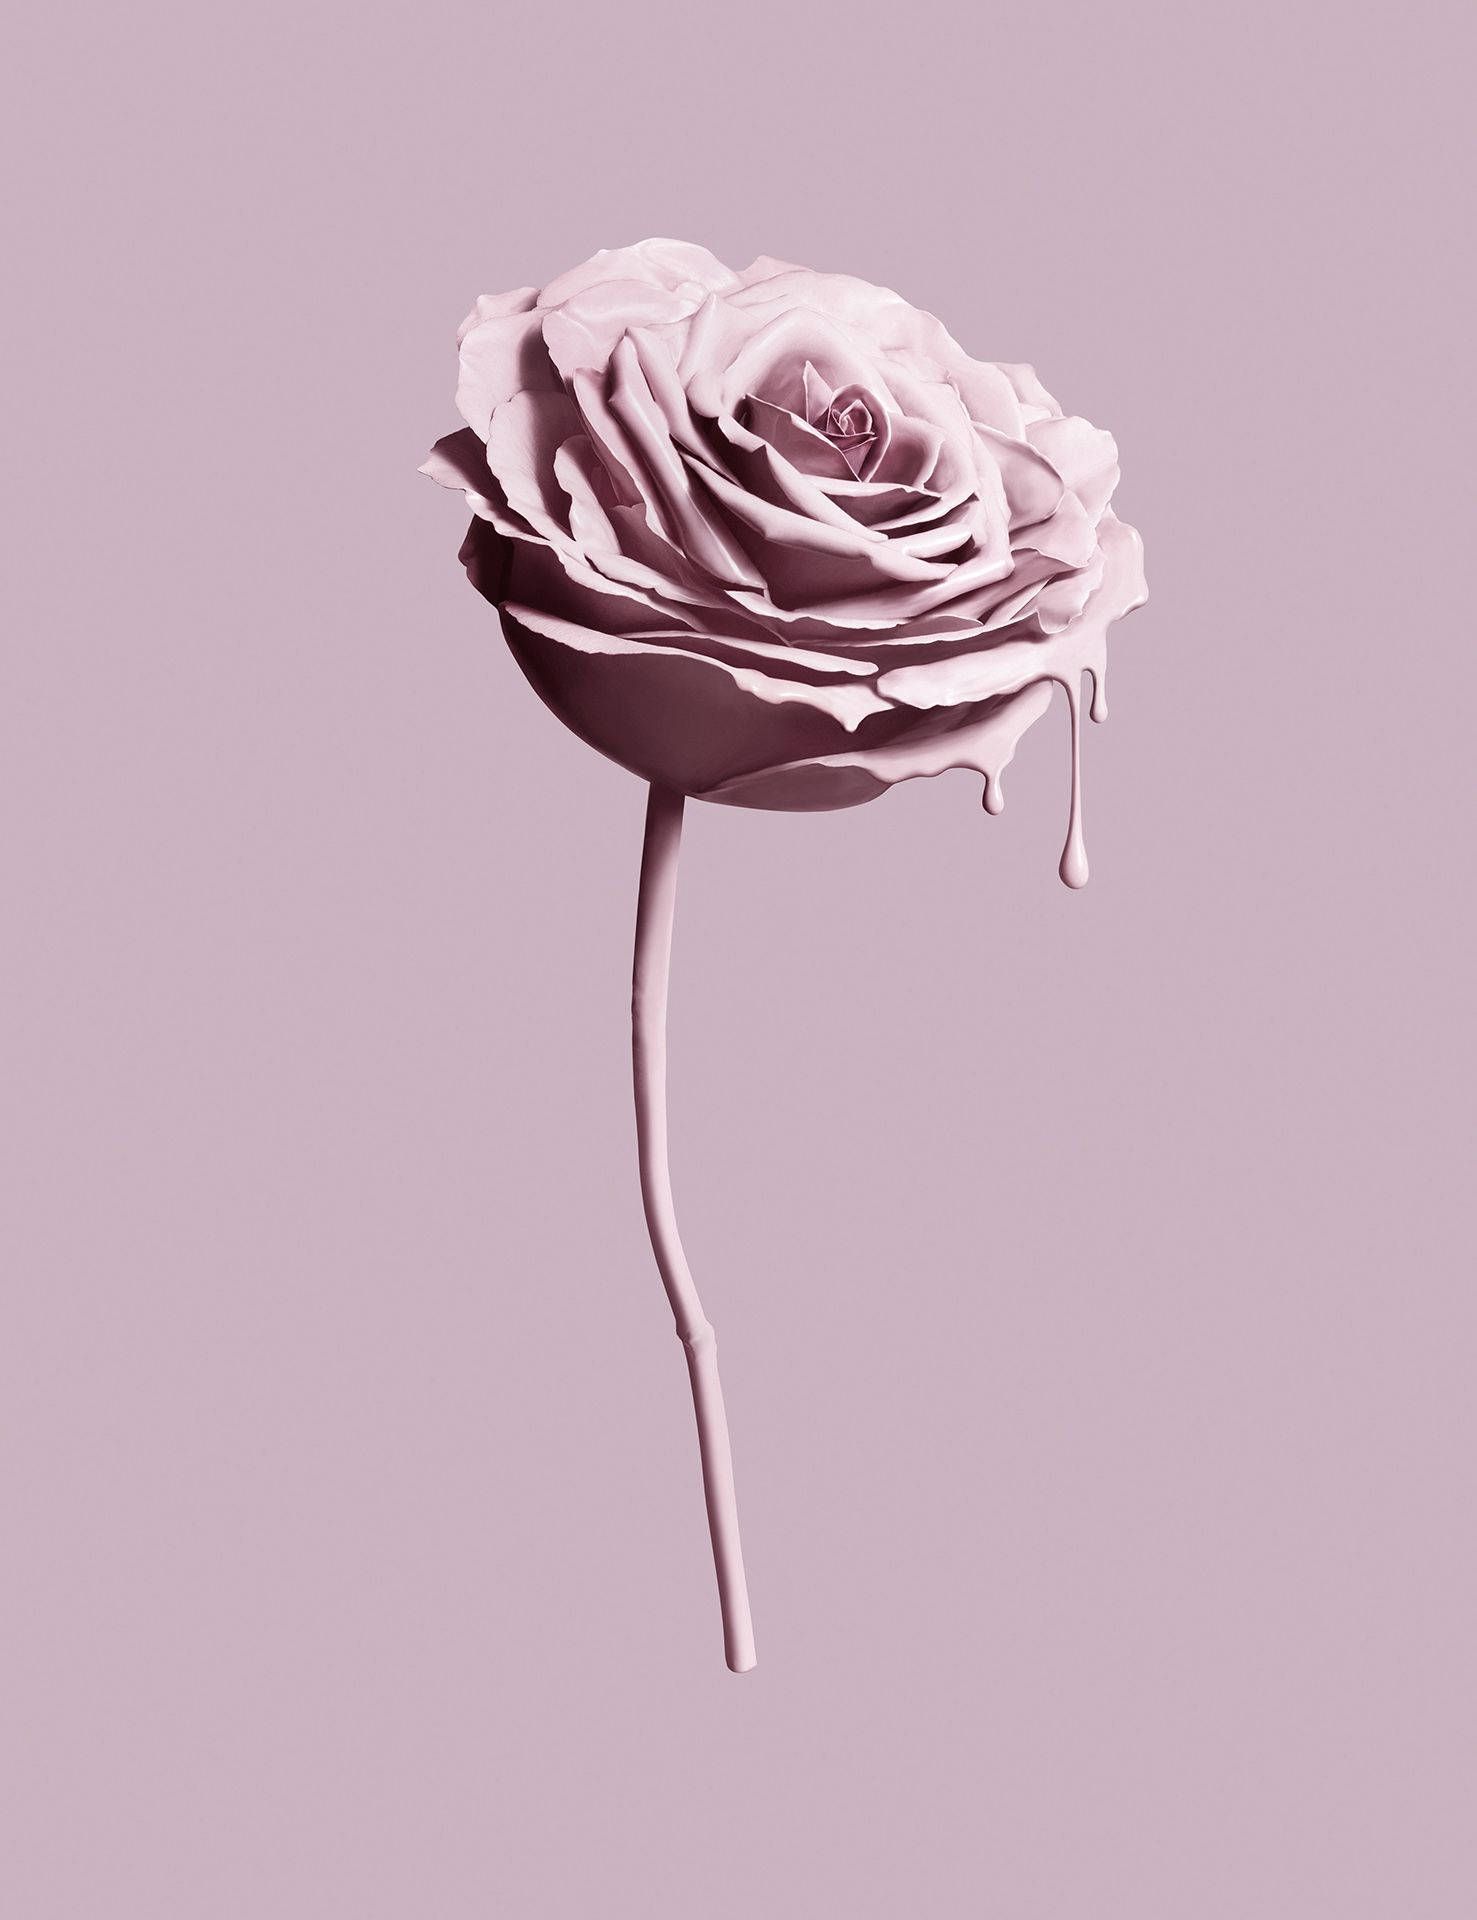 Download Pink Rose Tumblr Aesthetic Wallpaper